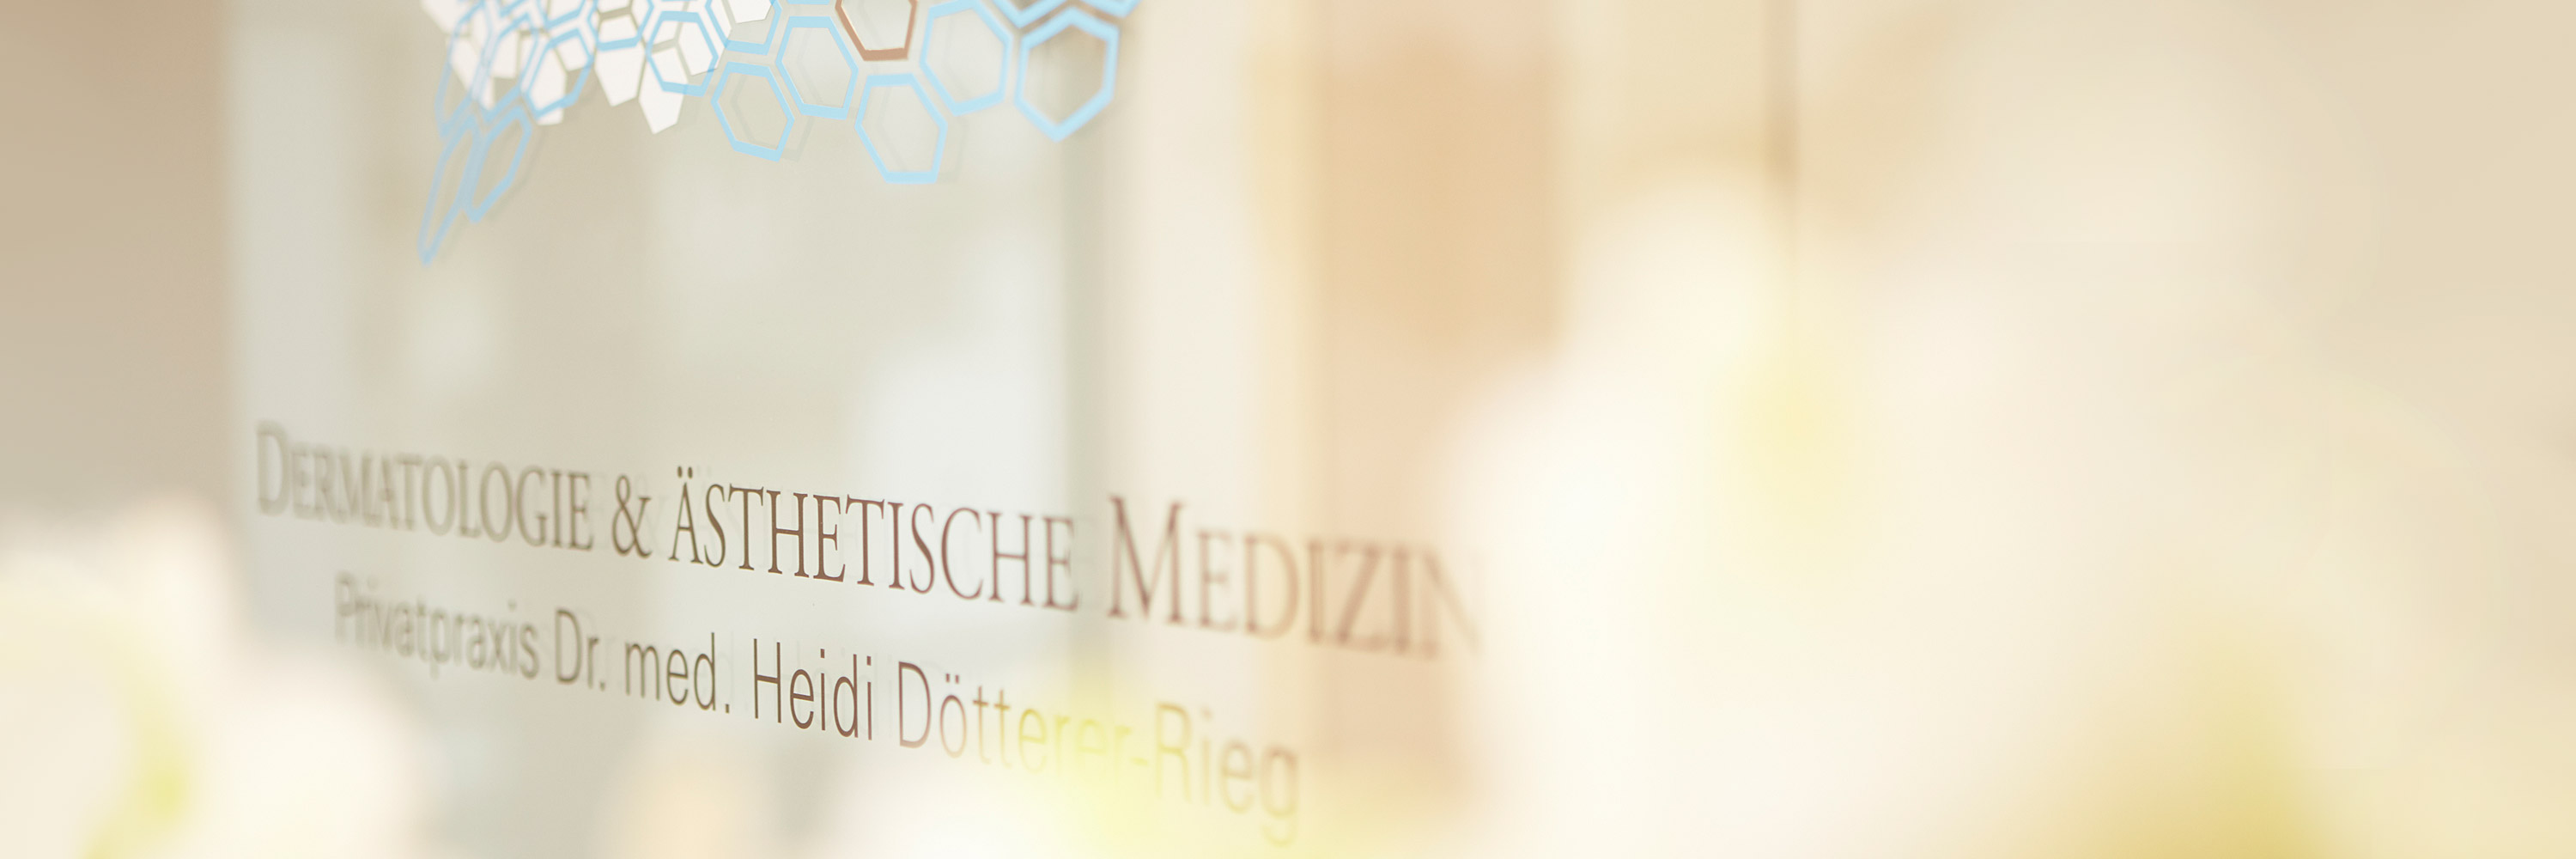 Dr. Heidi Dötterer-Rieg & Kollegen, Privatpraxis für Dermatologie, Phlebologie, Allergologie und Podologie bietet effektive Behandlungsmöglichkeiten gegen Hyperhidrose. Die Symbolik Frankfurter Hautarztpraxis scheint durch verschwommene Orchideen.